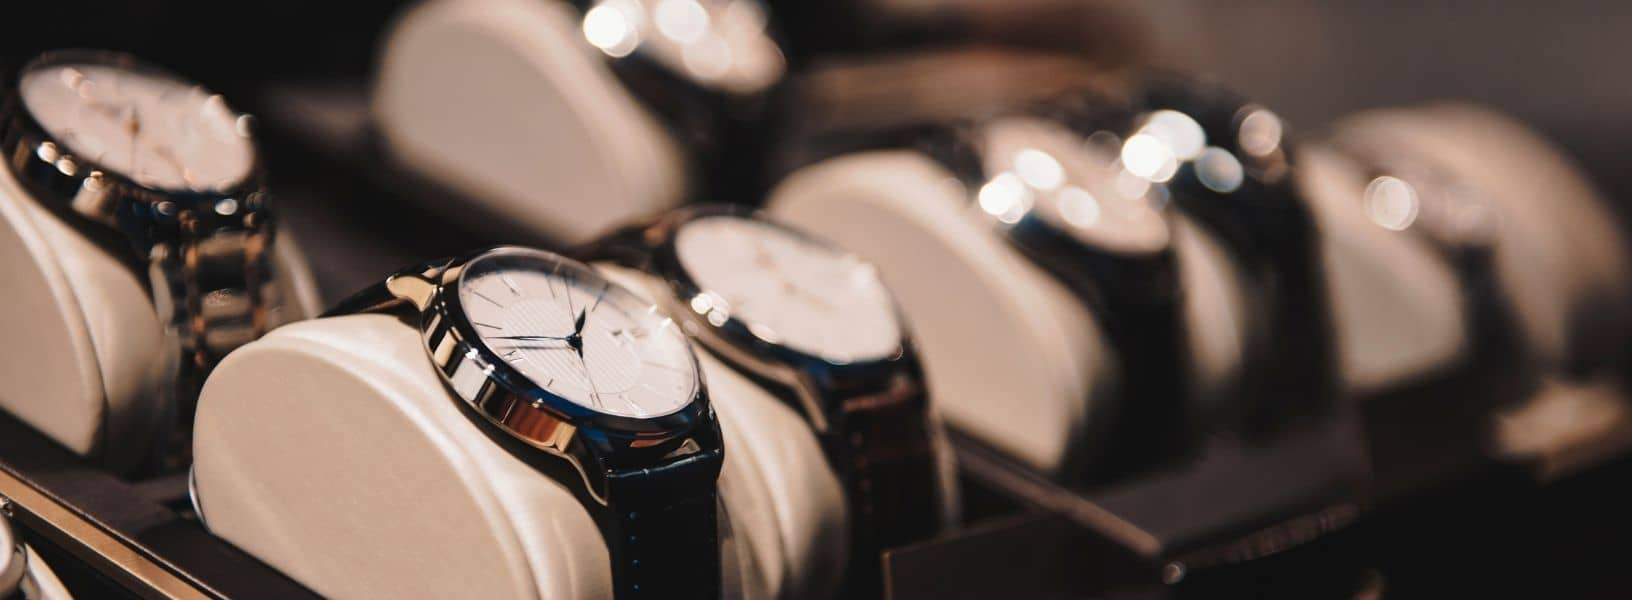 idée cadeau luxe homme une montre